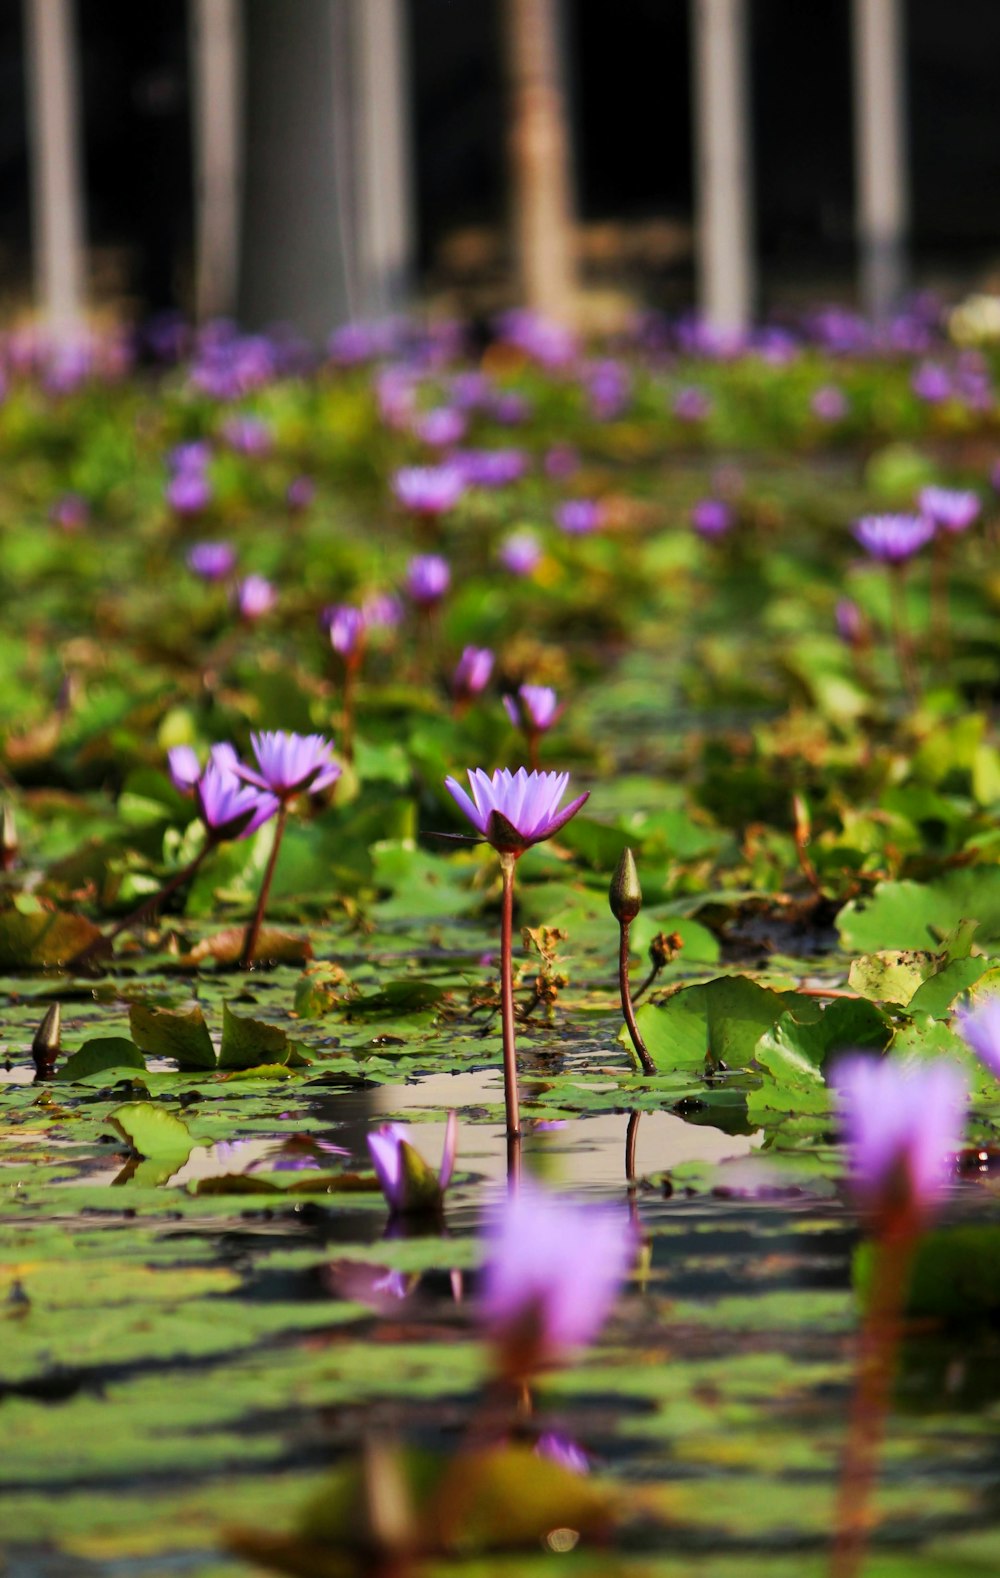 Un estanque lleno de muchos nenúfares púrpuras